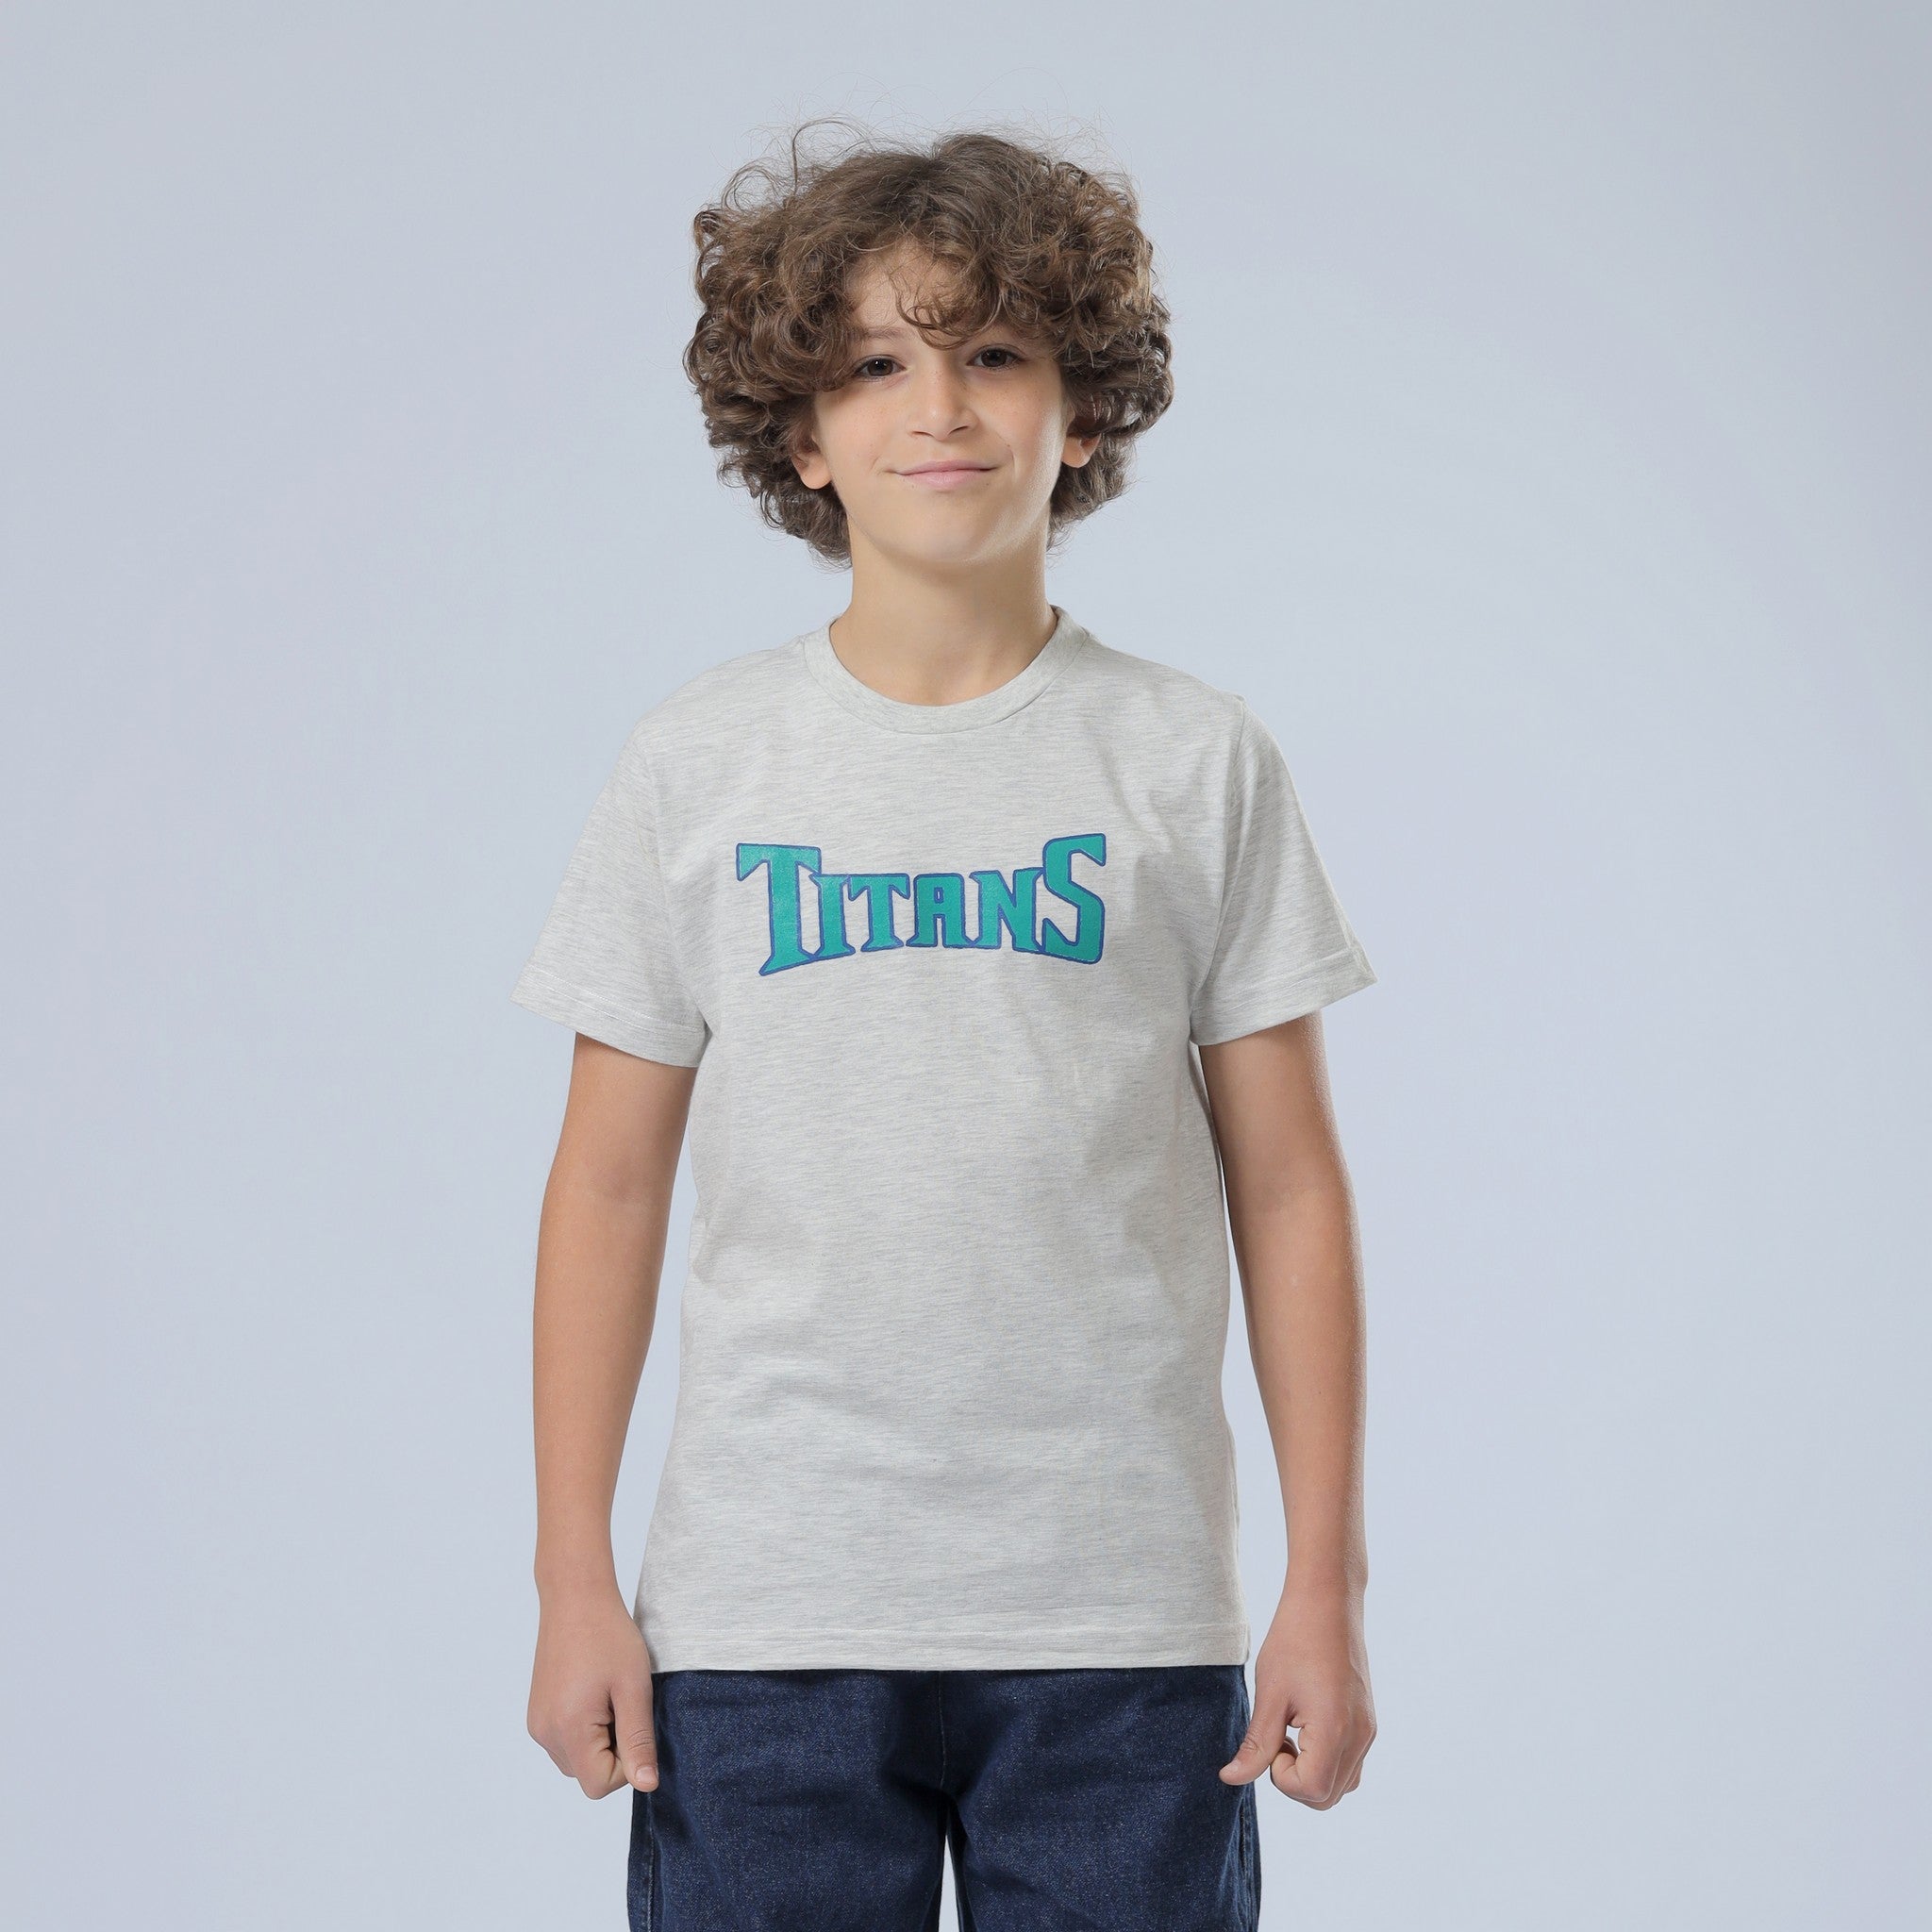 Titans Print Grey T-Shirt